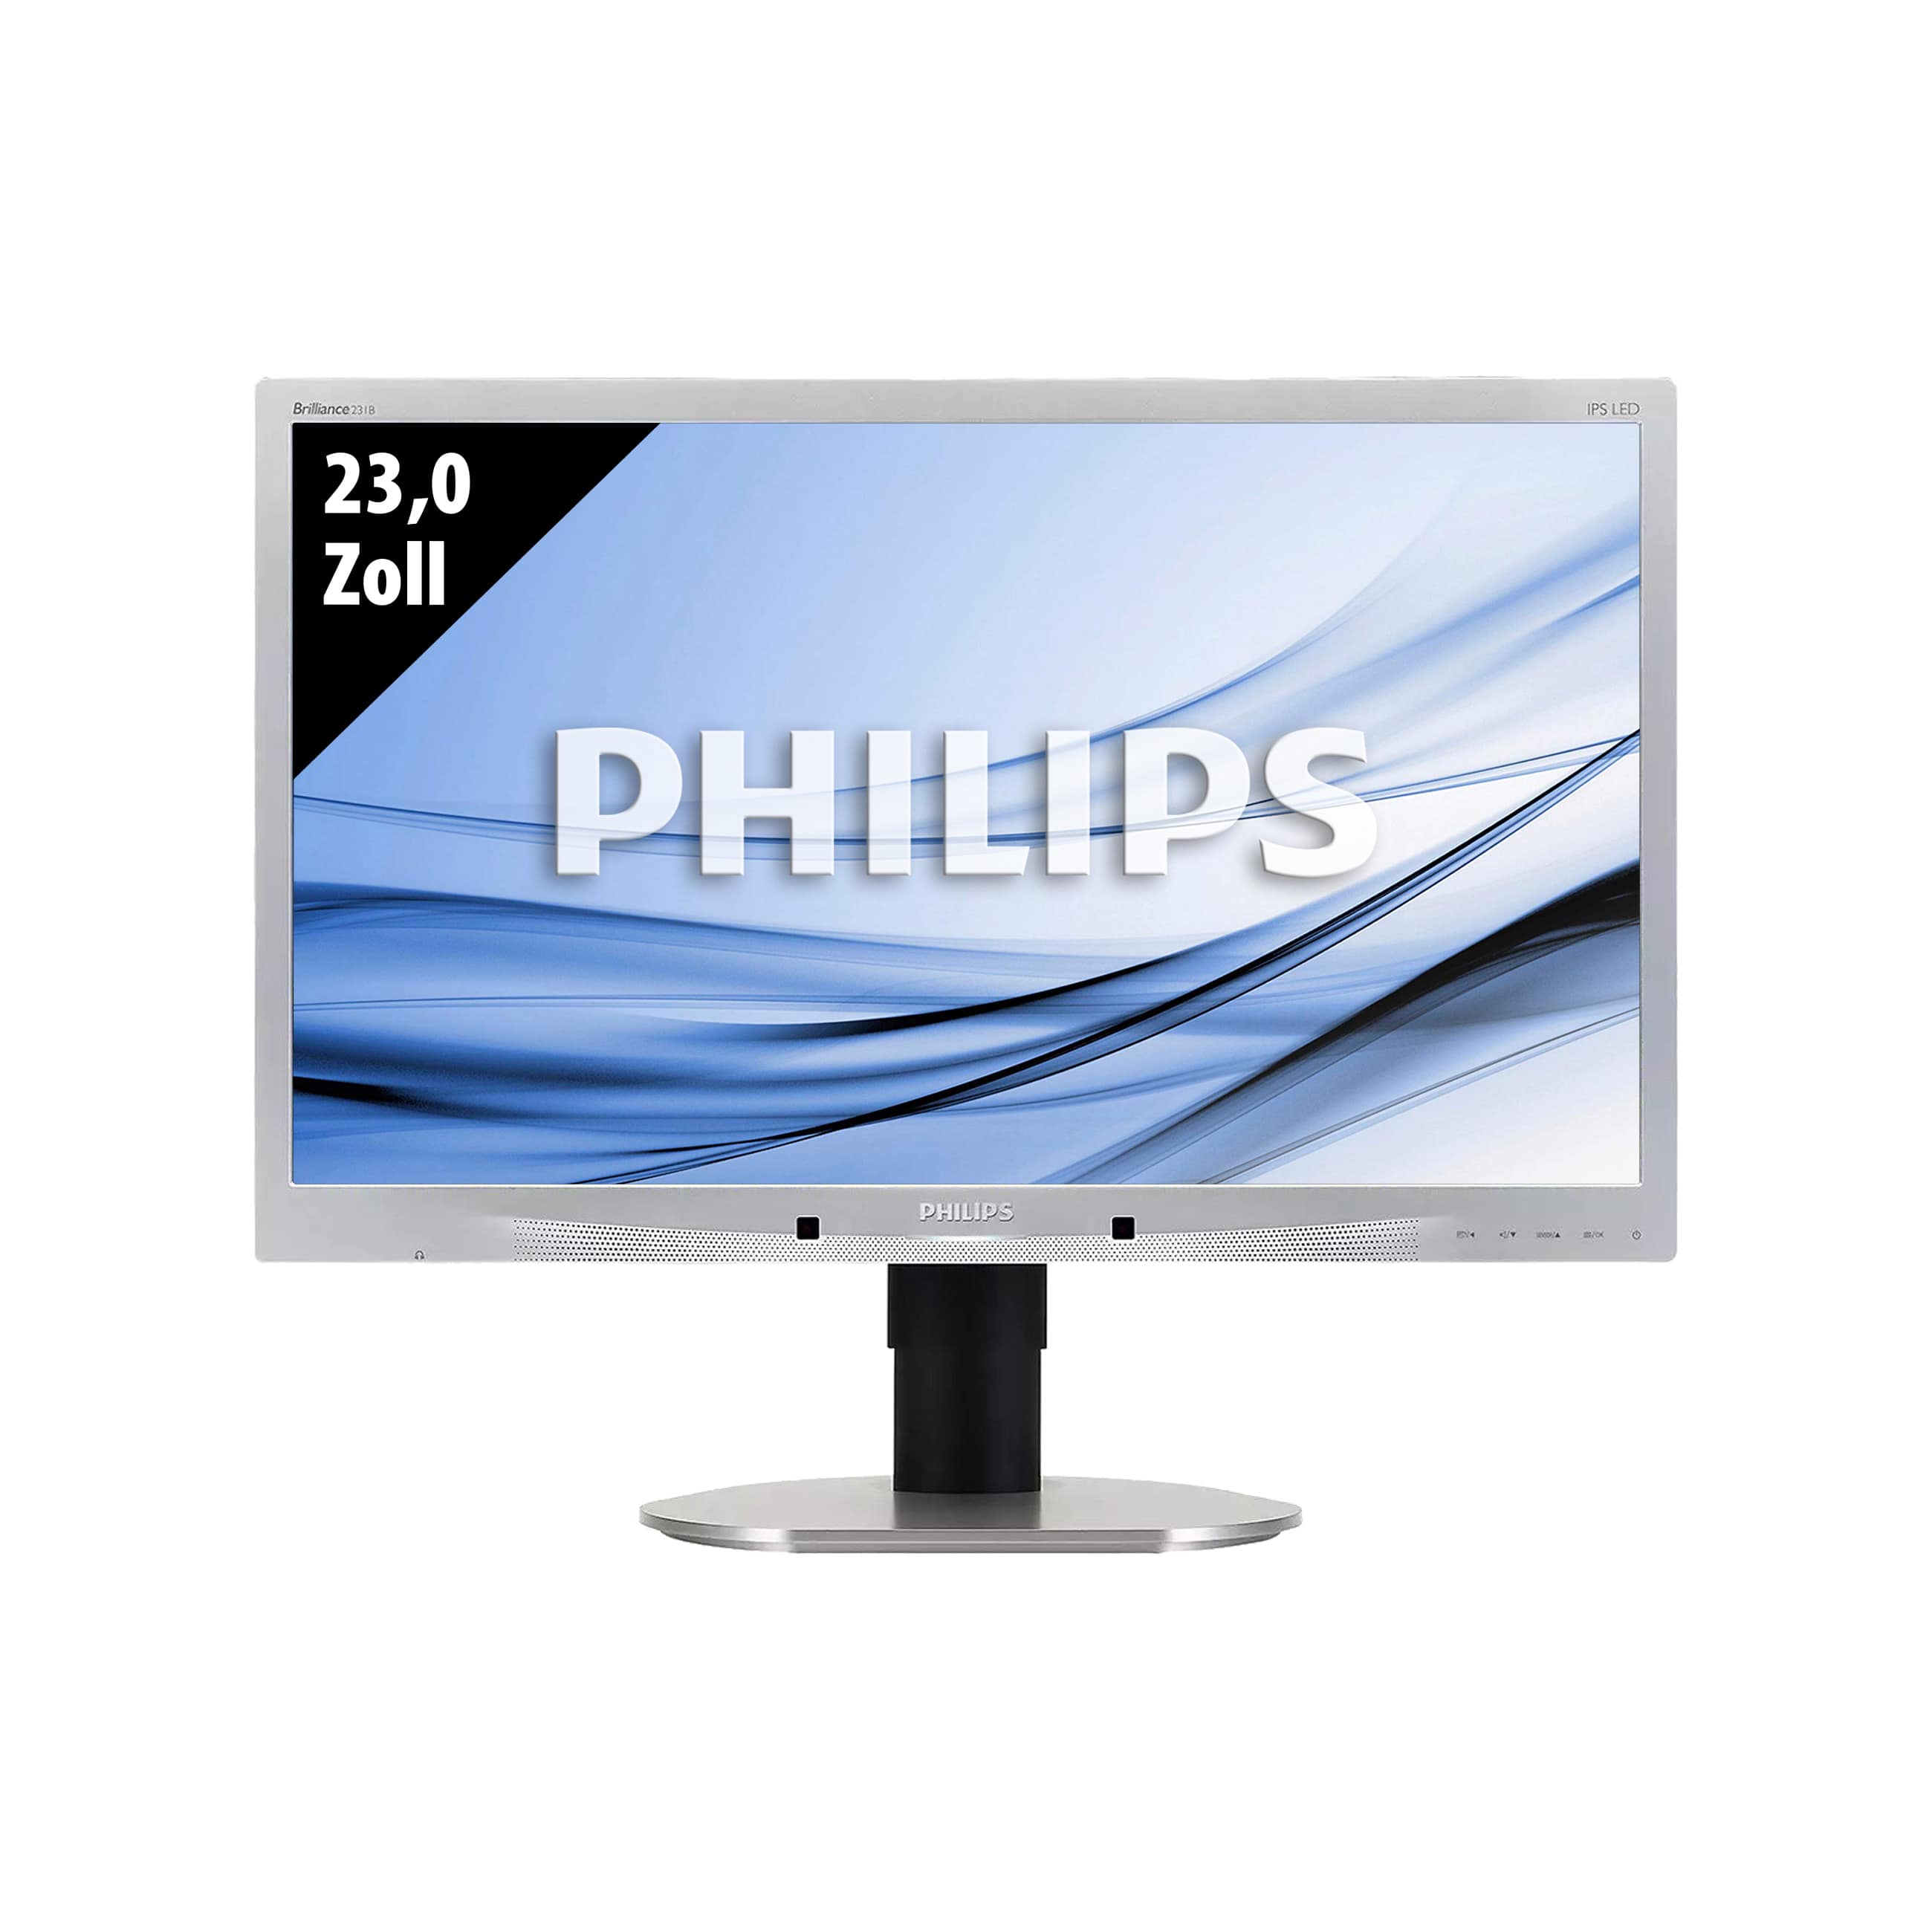 Philips Brilliance 231B4QPYCS - 1920 x 1080 - FHD